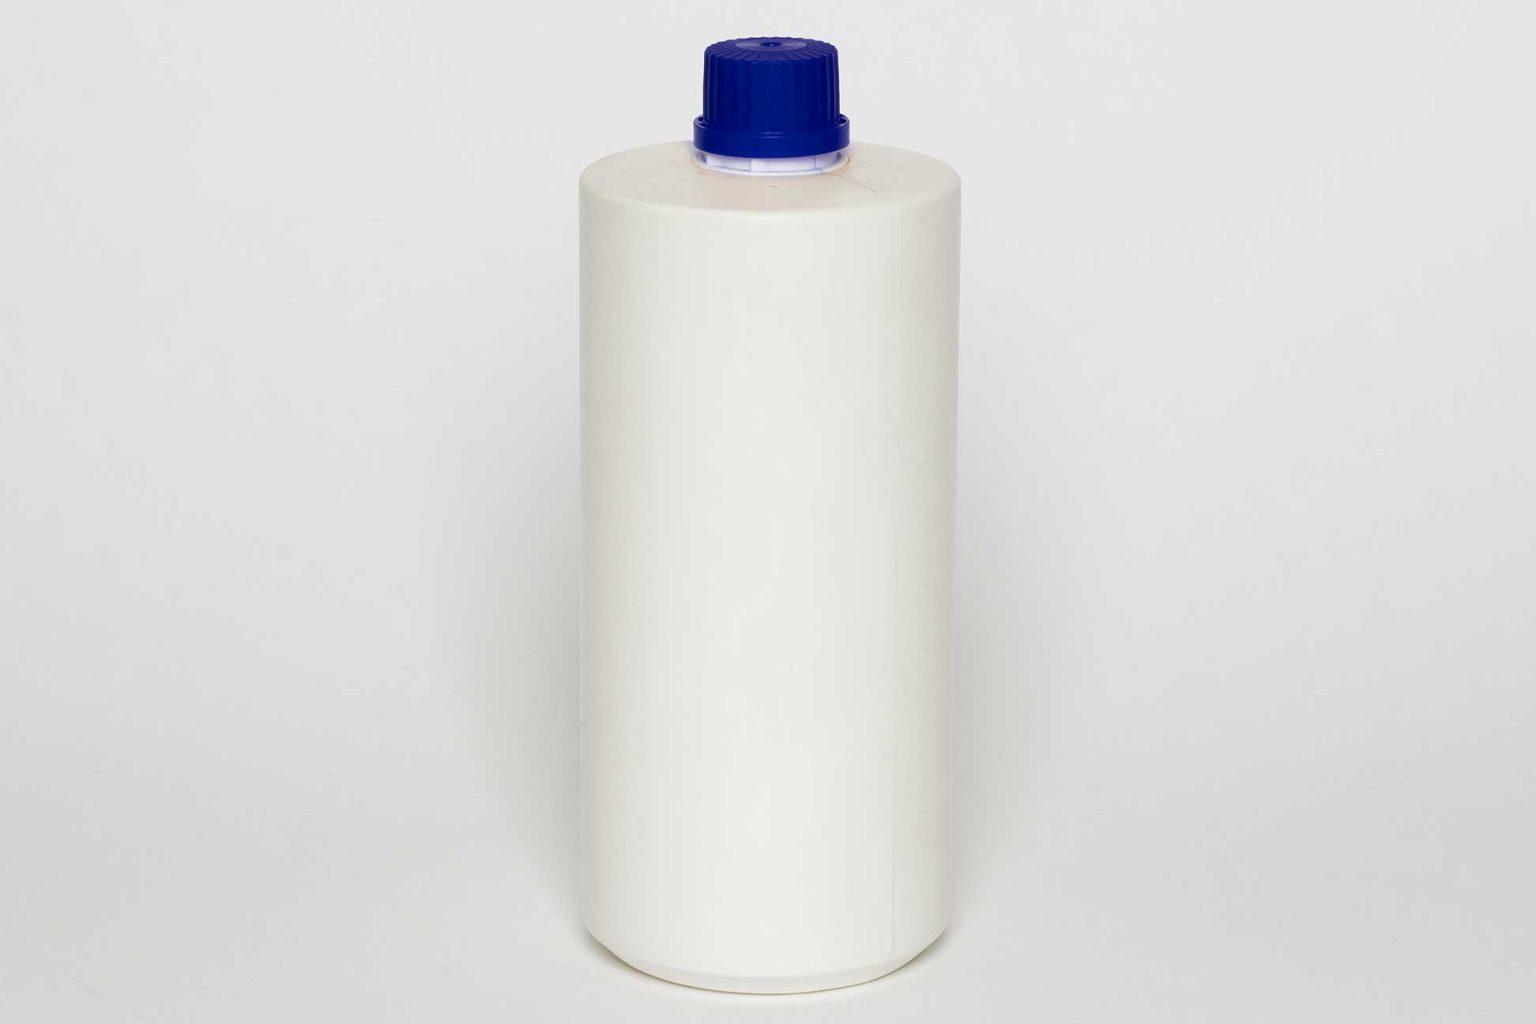 Flacone BB 81 in plastica HDPE da 1 litro, bianco, foro 28/410, con tappo ad avvitamento e sigillo garanzia.